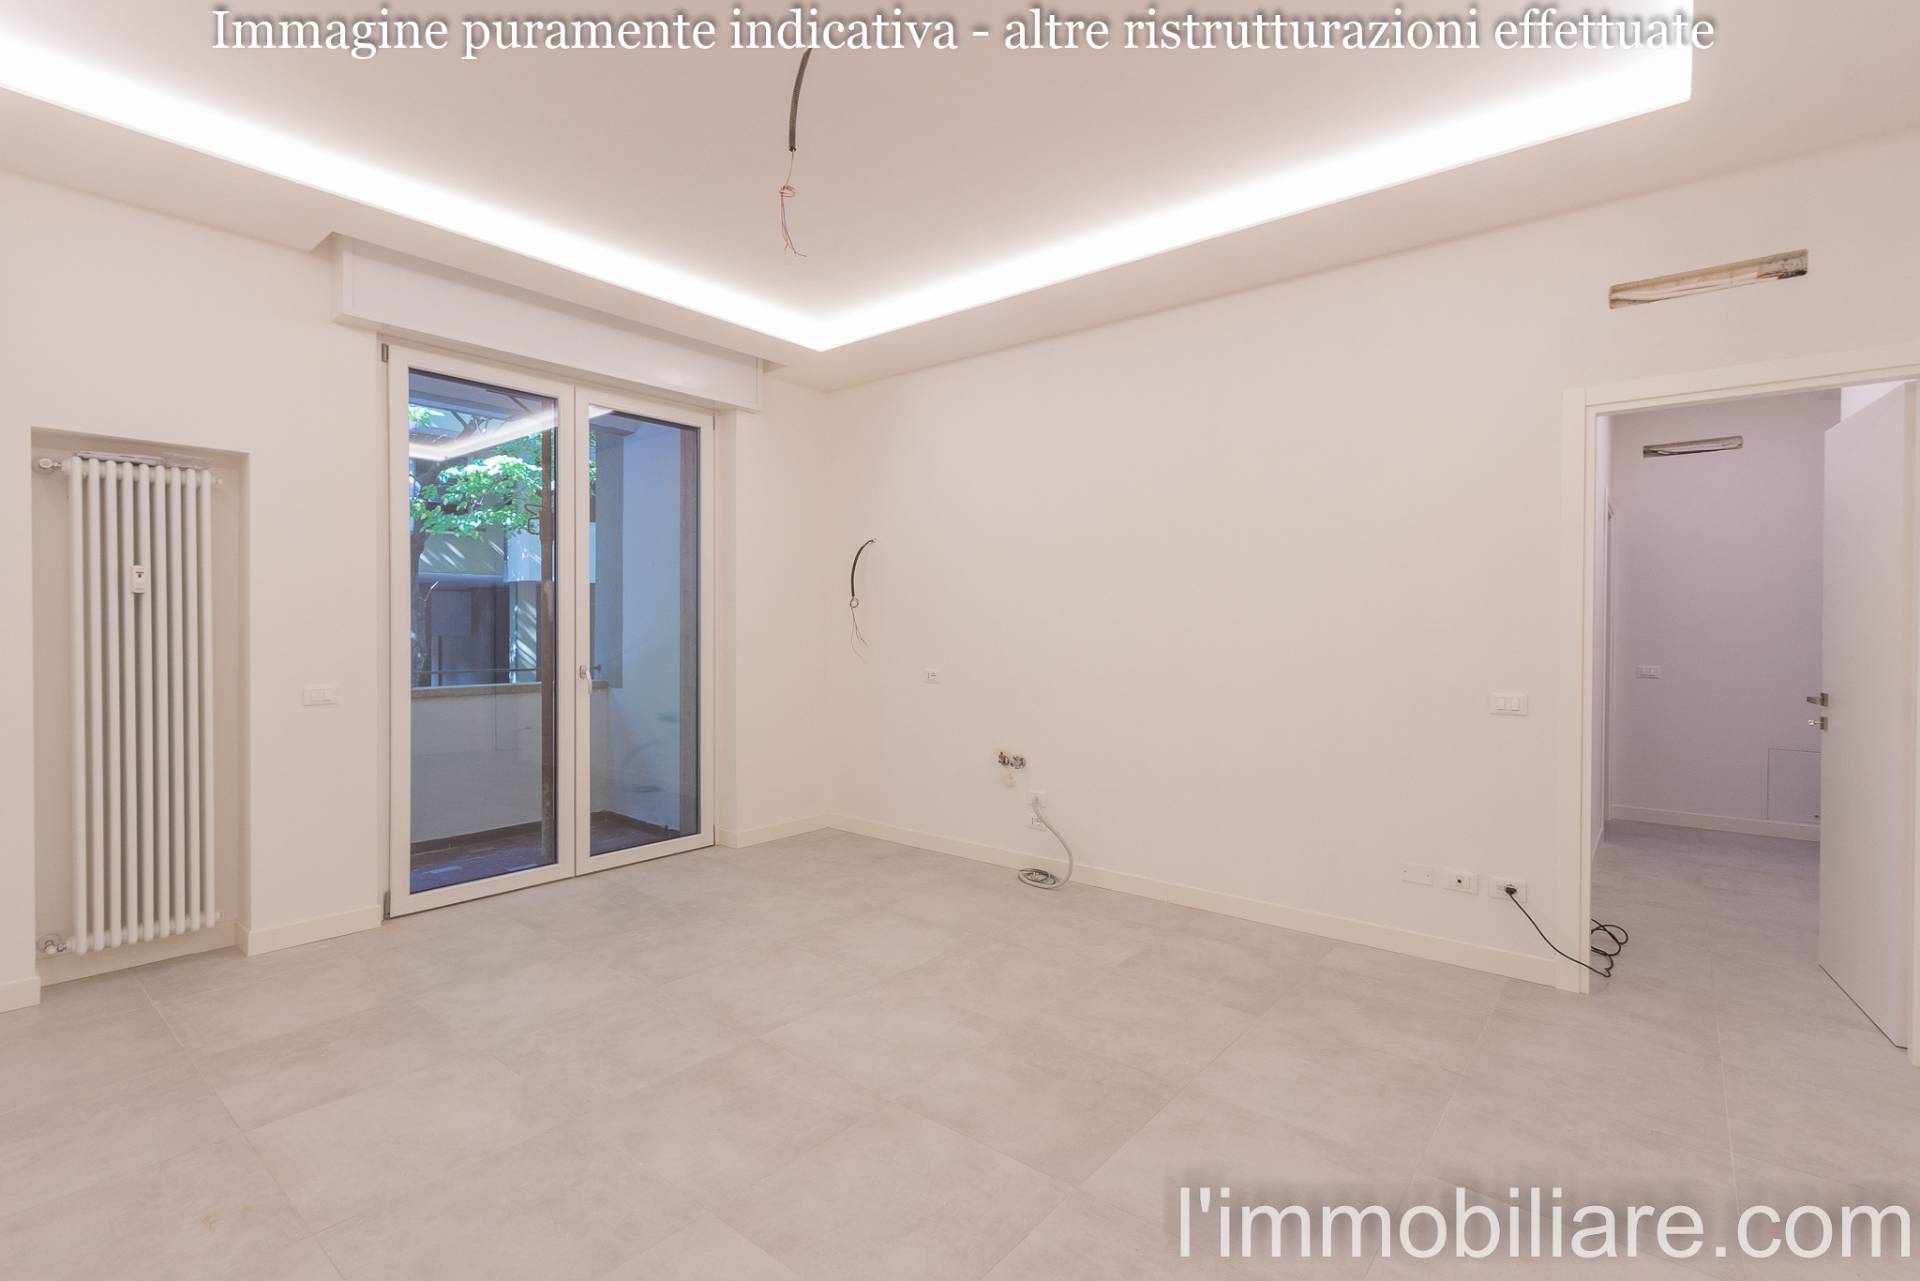 Appartamento in Vendita a Verona: 2 locali, 55 mq - Foto 3